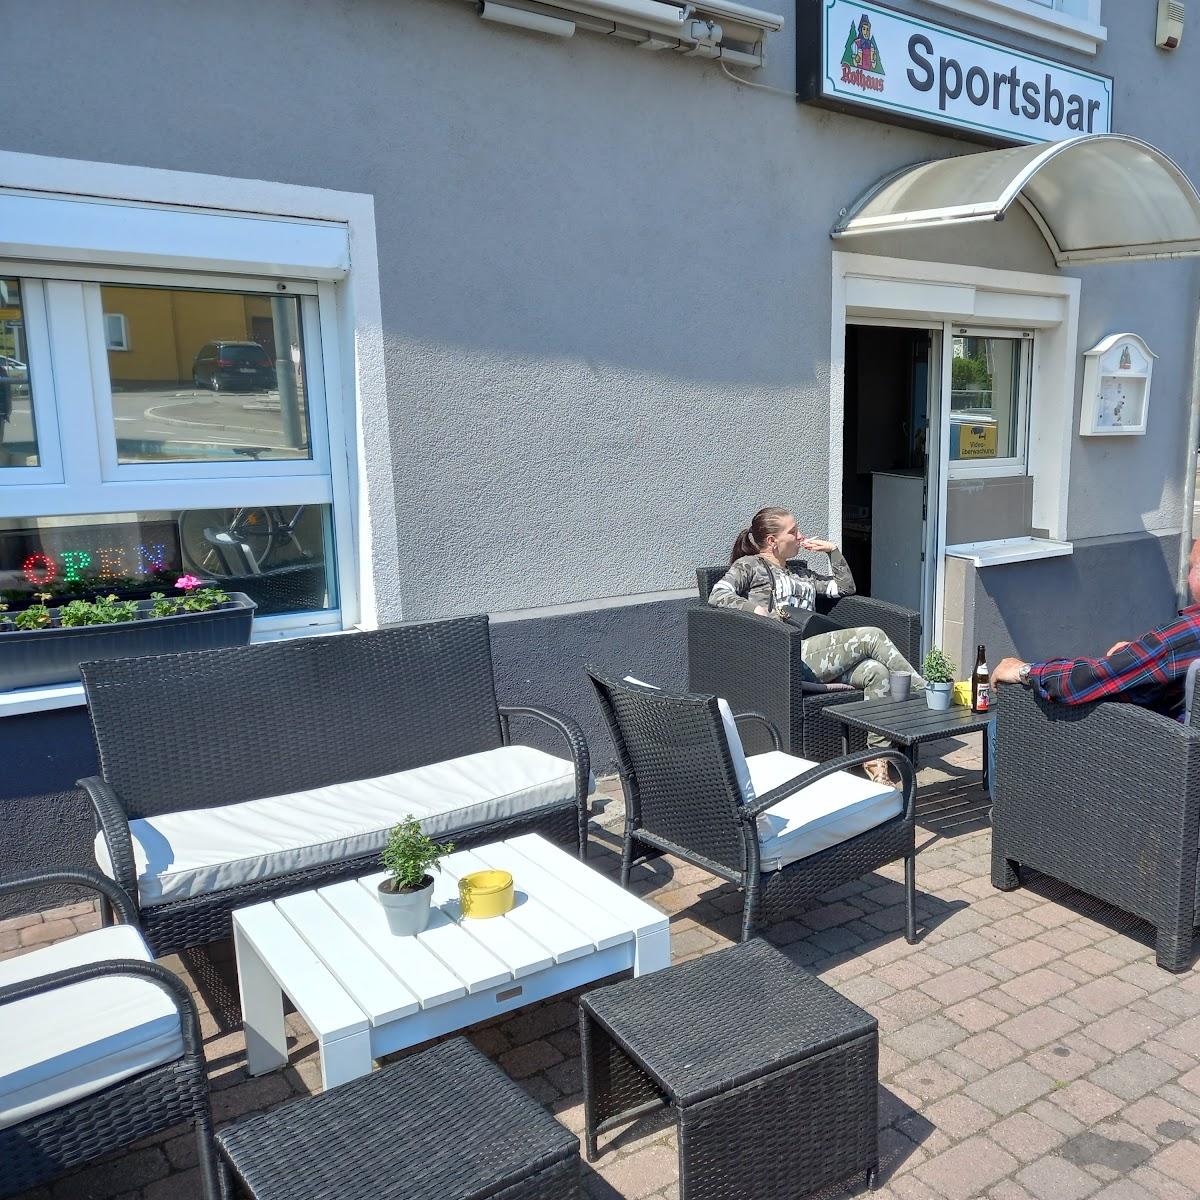 Restaurant "Sportbar 13" in Grenzach-Wyhlen